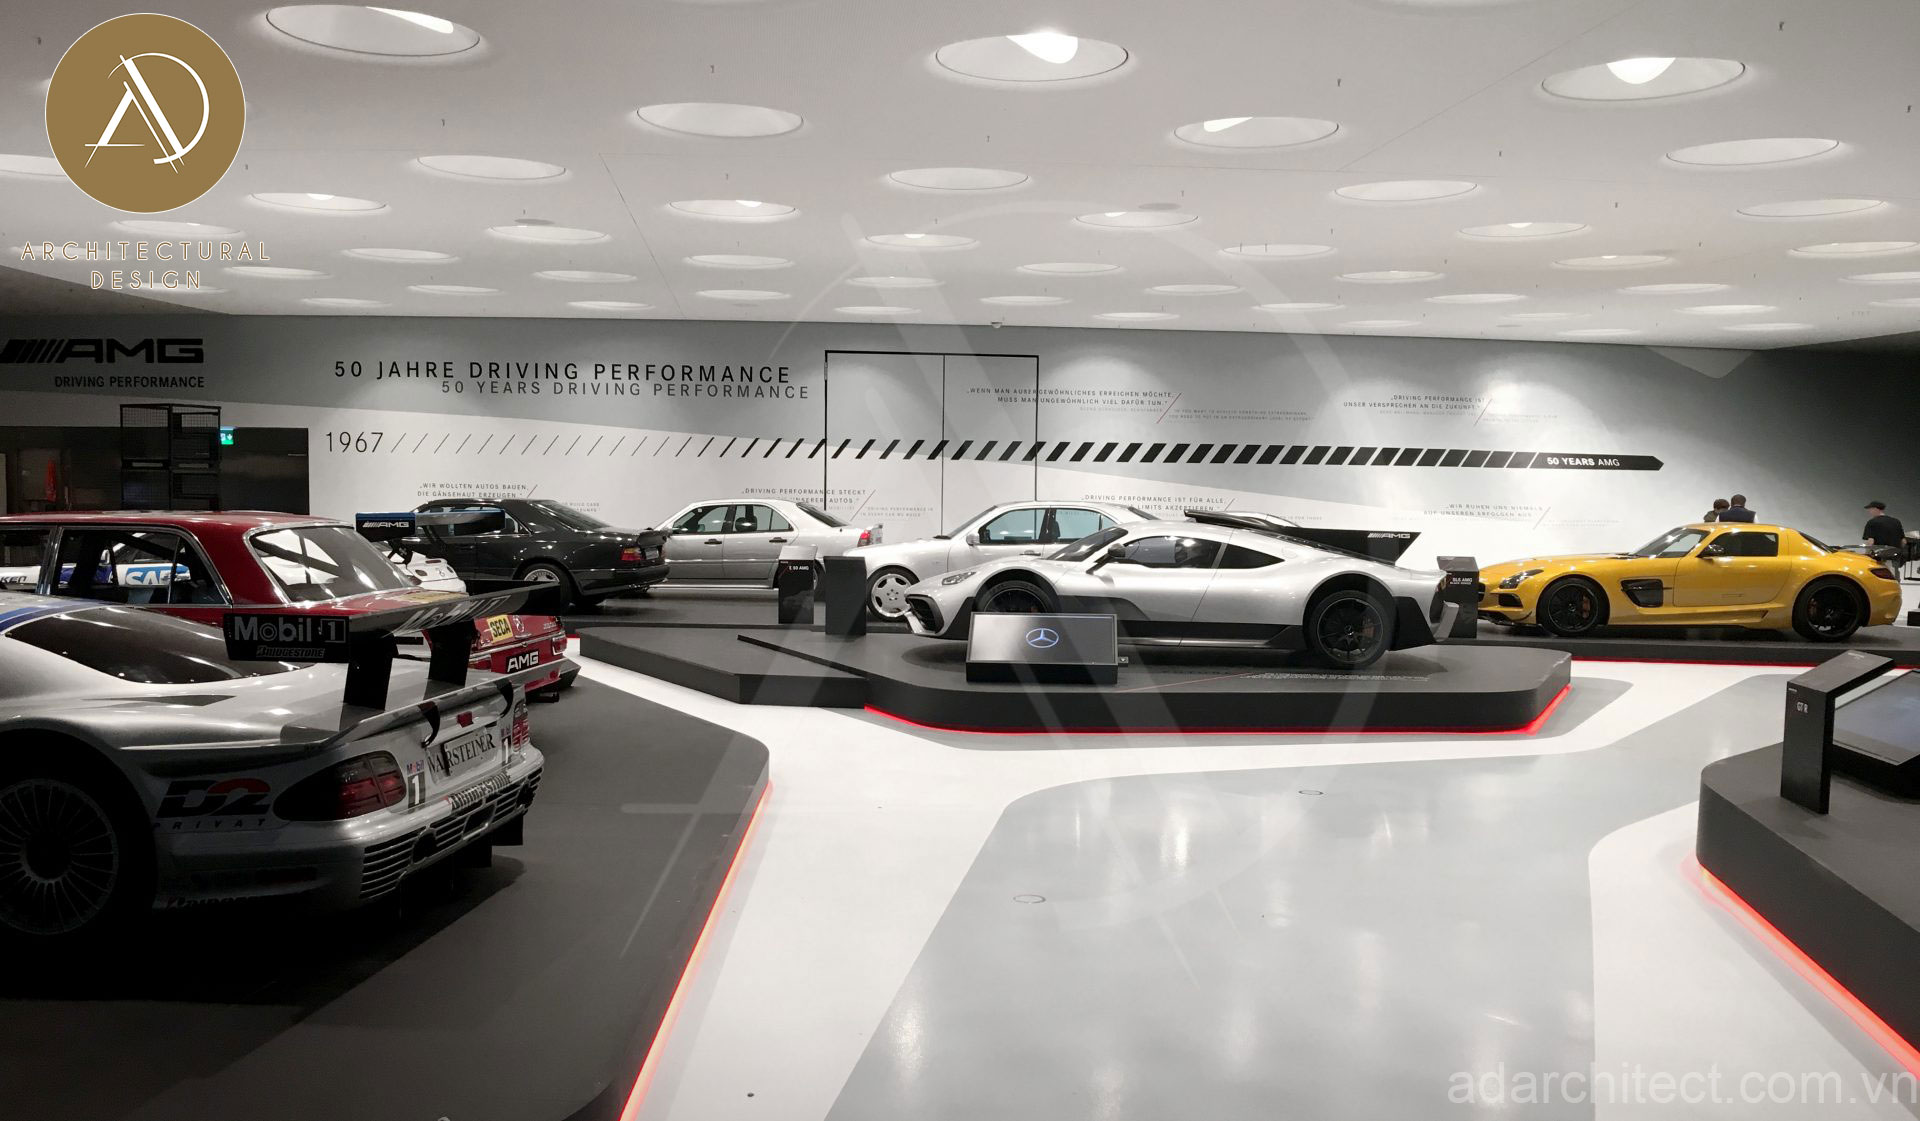 showroom được thiết kế từng bục để trưng bày xe giúp sản phẩm bắt mắt